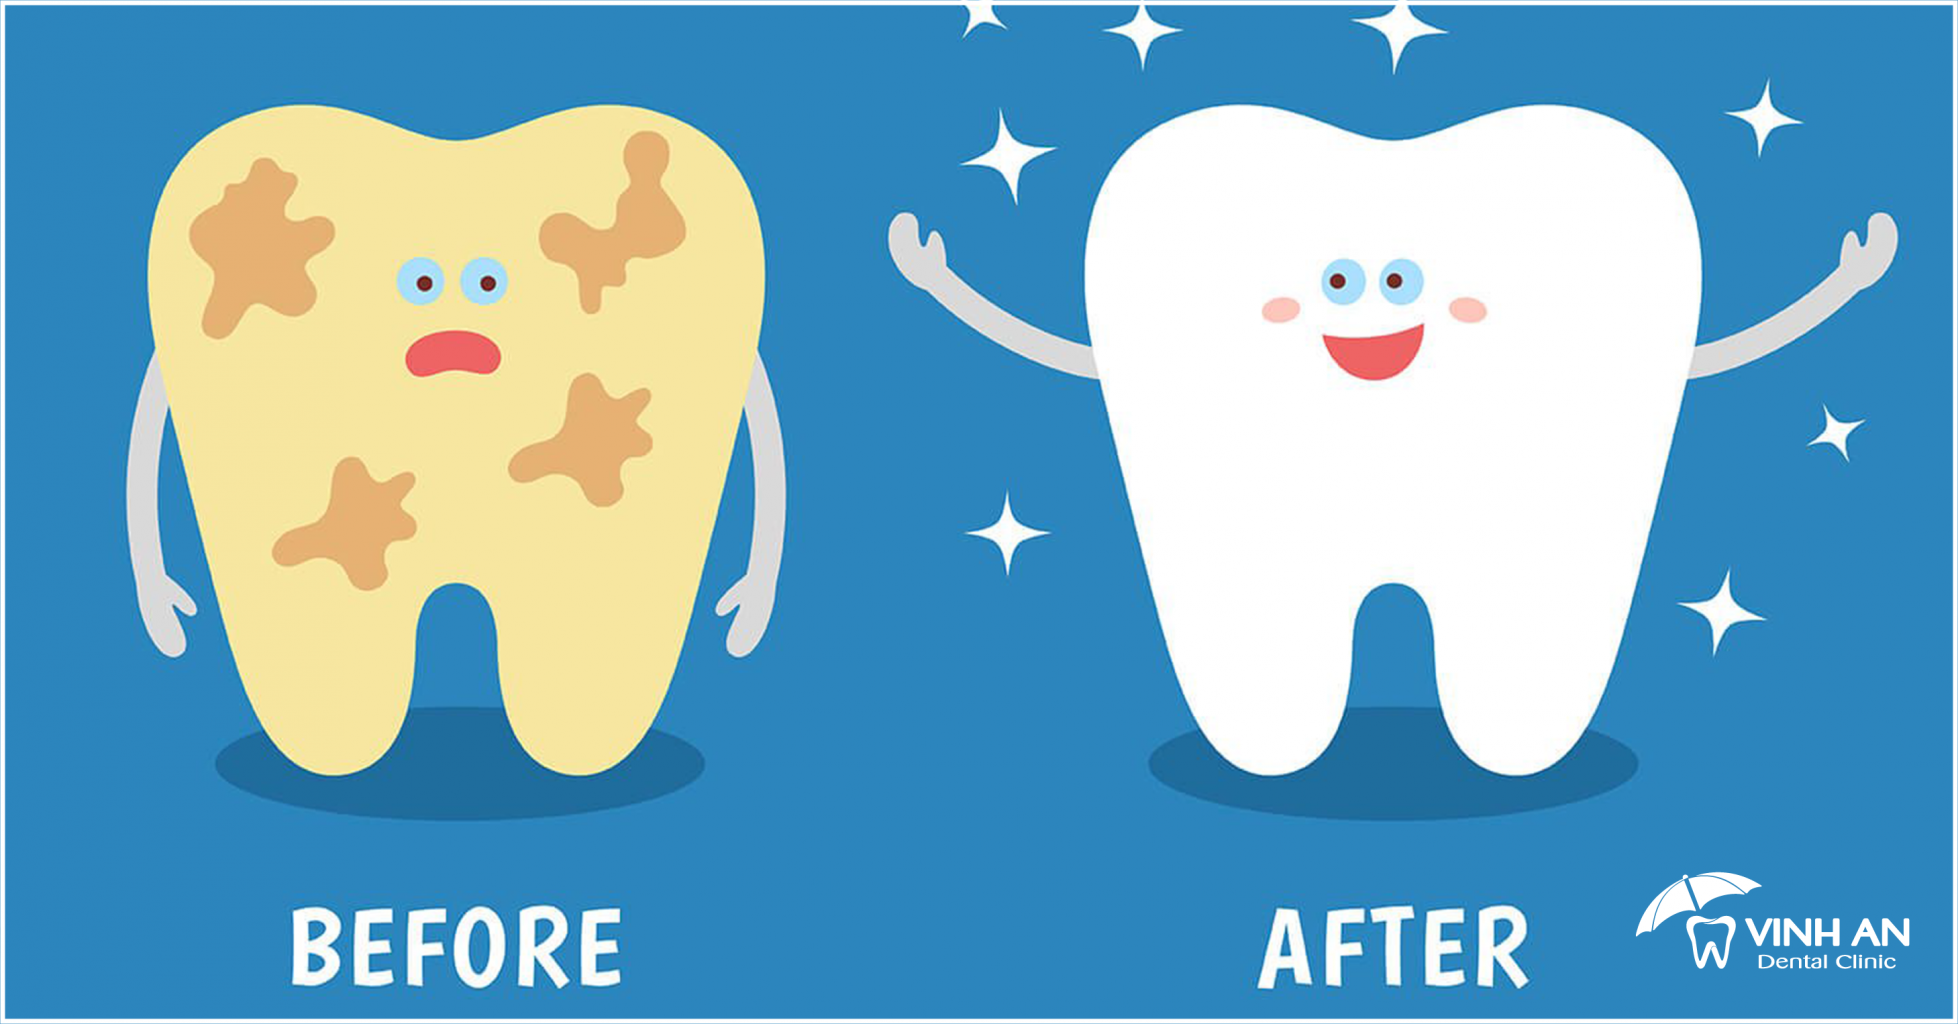 13+ cách làm sạch mảng bám trên răng hiệu quả trong 2 phút ít người biết